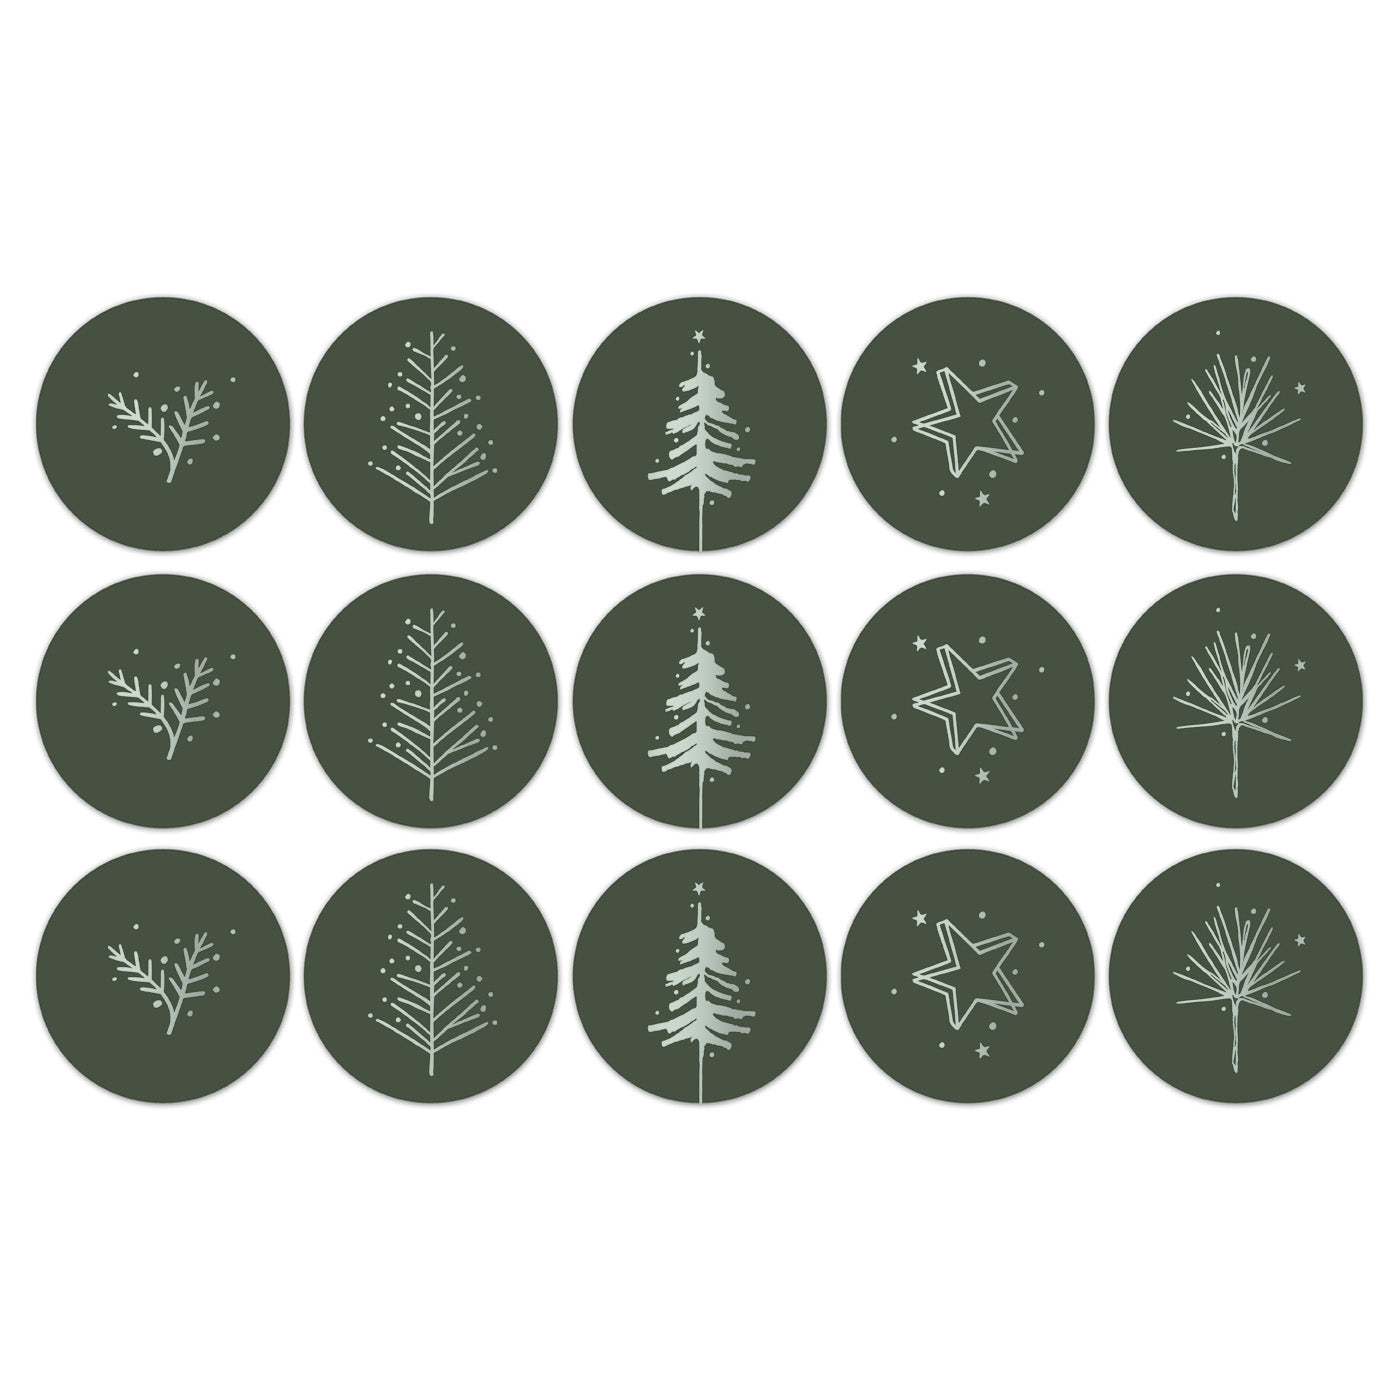 10 cadeau stickers kerst groen